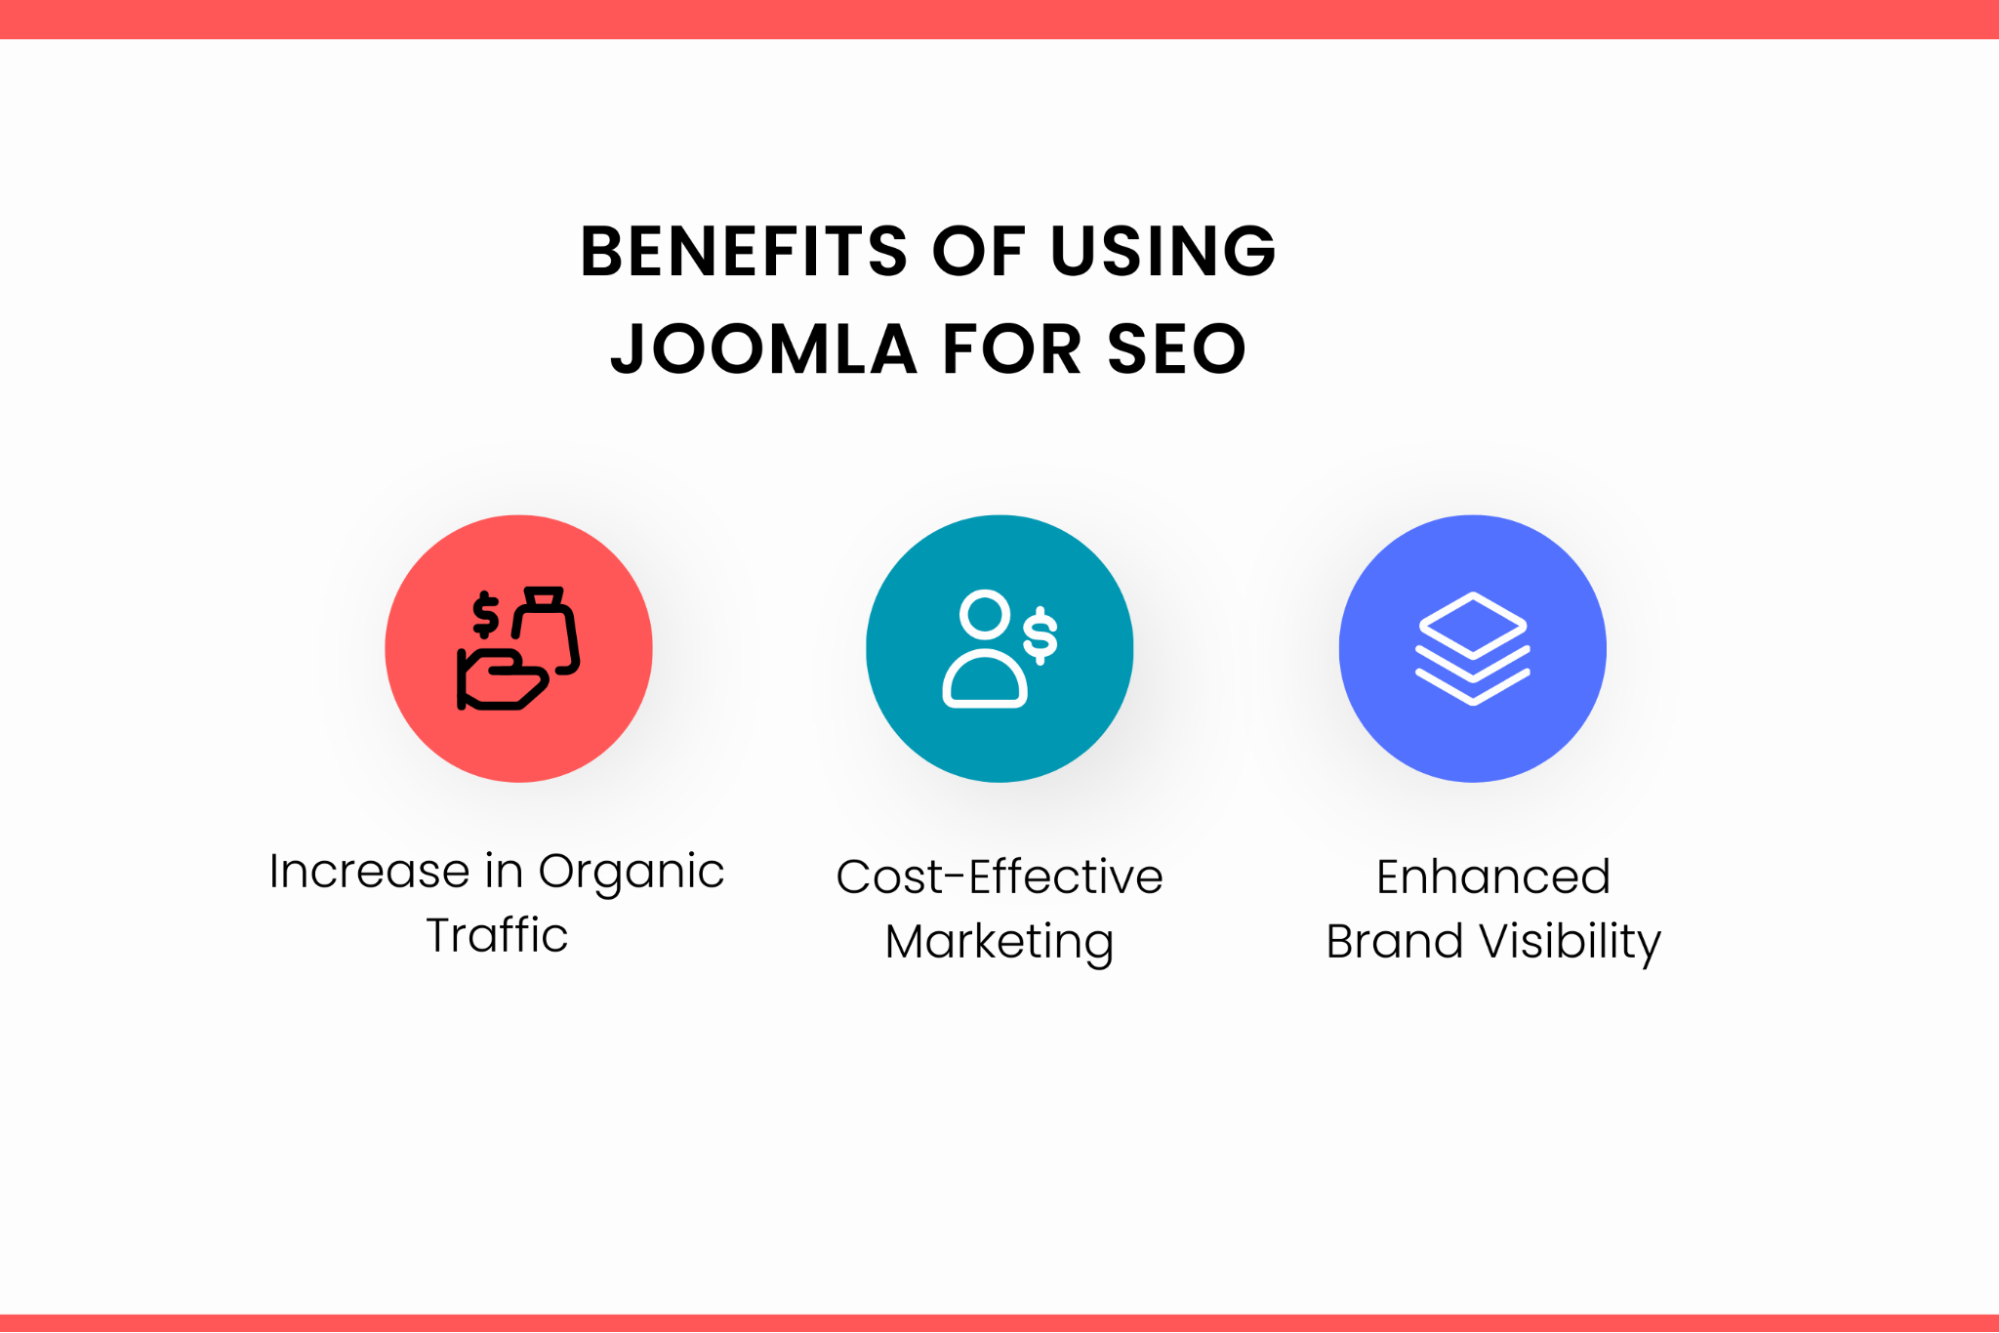 Benefits of using Joomla for SEO